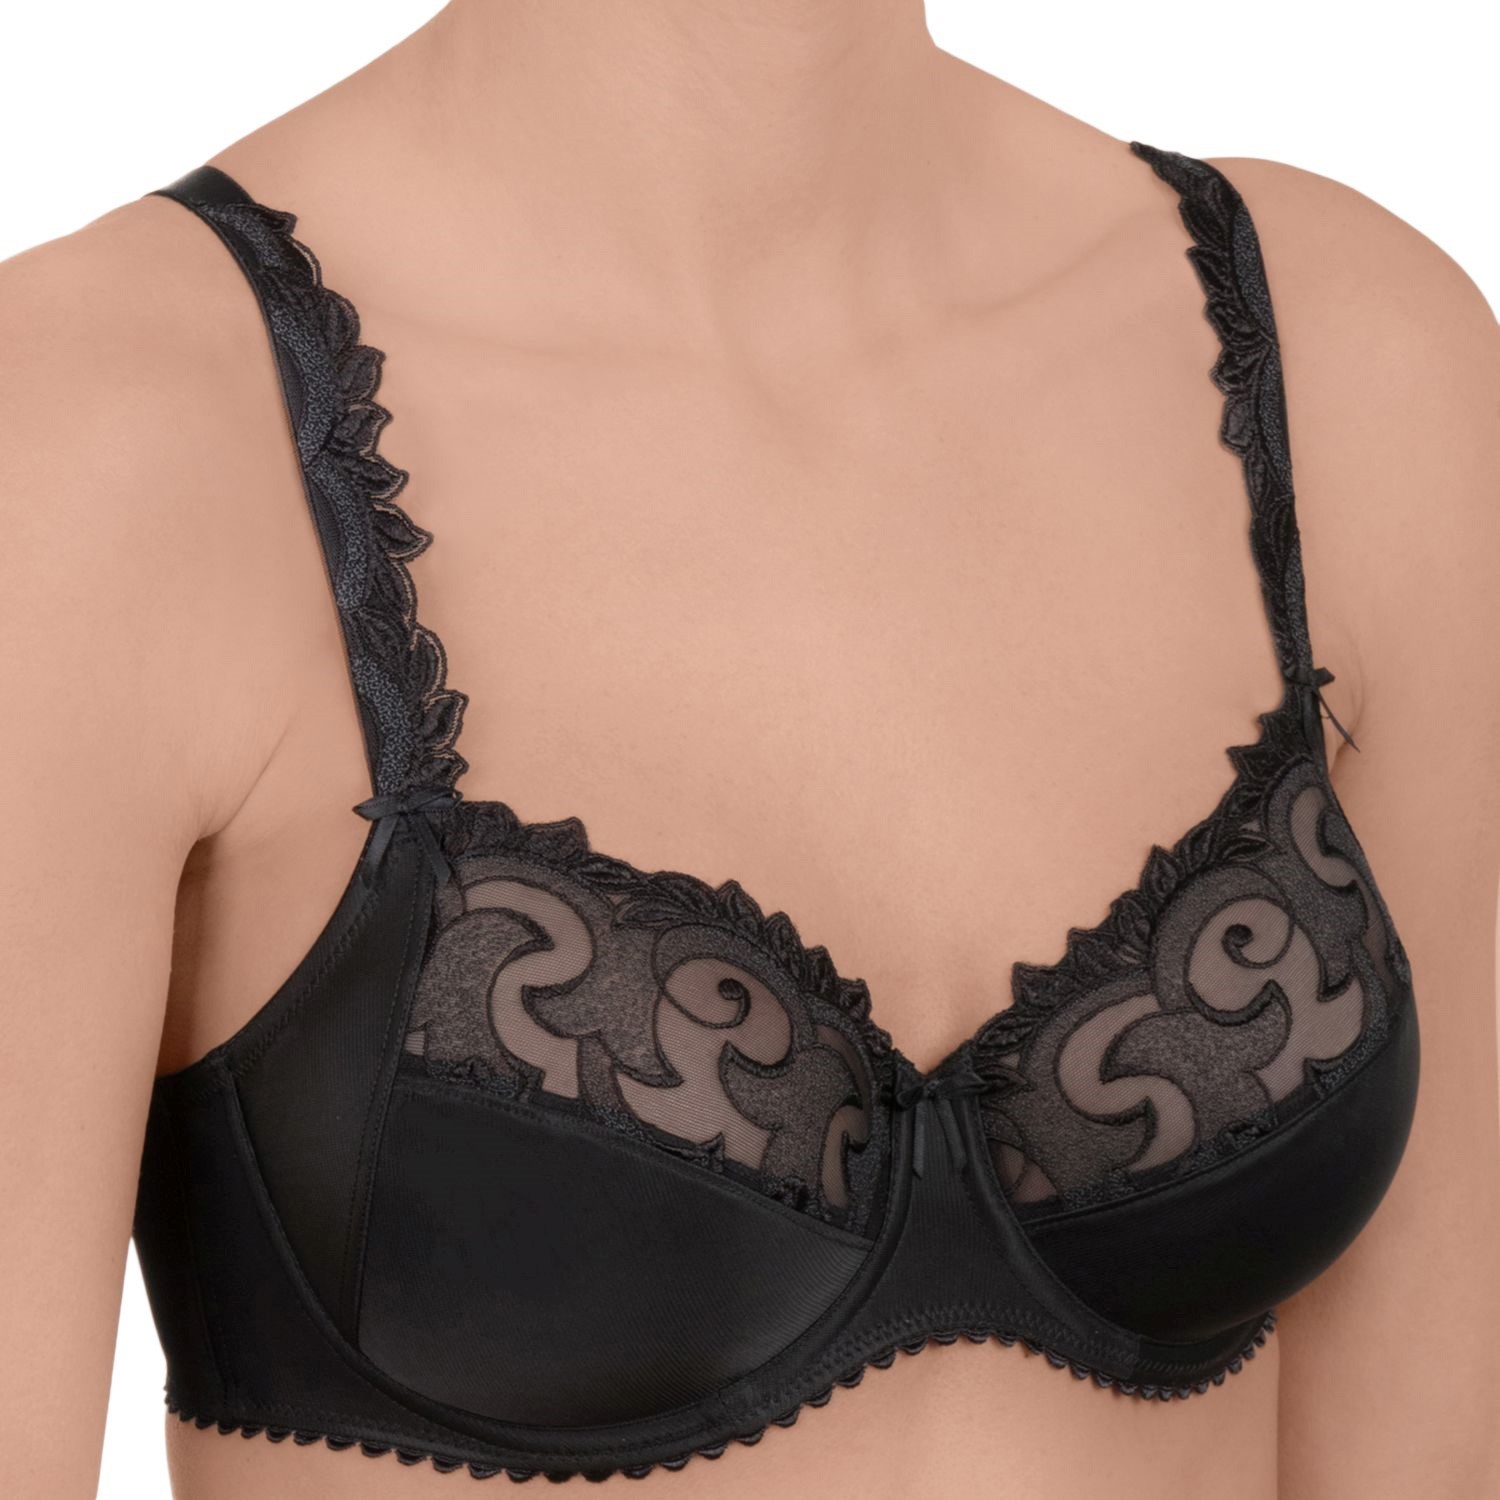 Felina Rhapsody Bra With Wire - Wired bra - Bras - Underwear